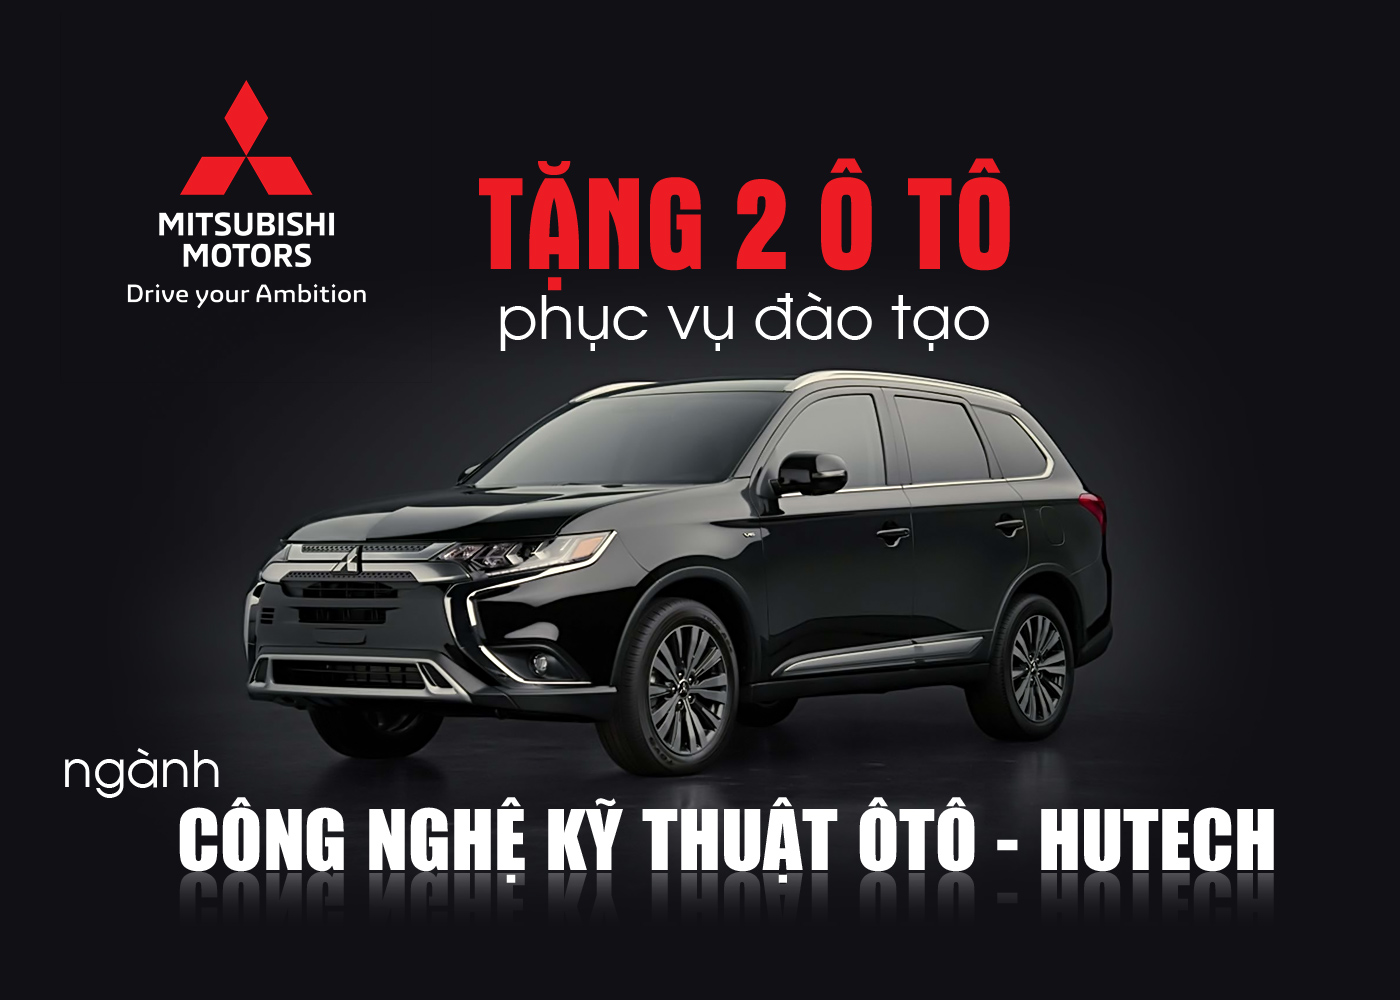 Mitsubishi Motors Vietnam tặng 2 ô tô phục vụ đào tạo ngành công nghệ kỹ thuật ôtô HUTECH - Ảnh 1